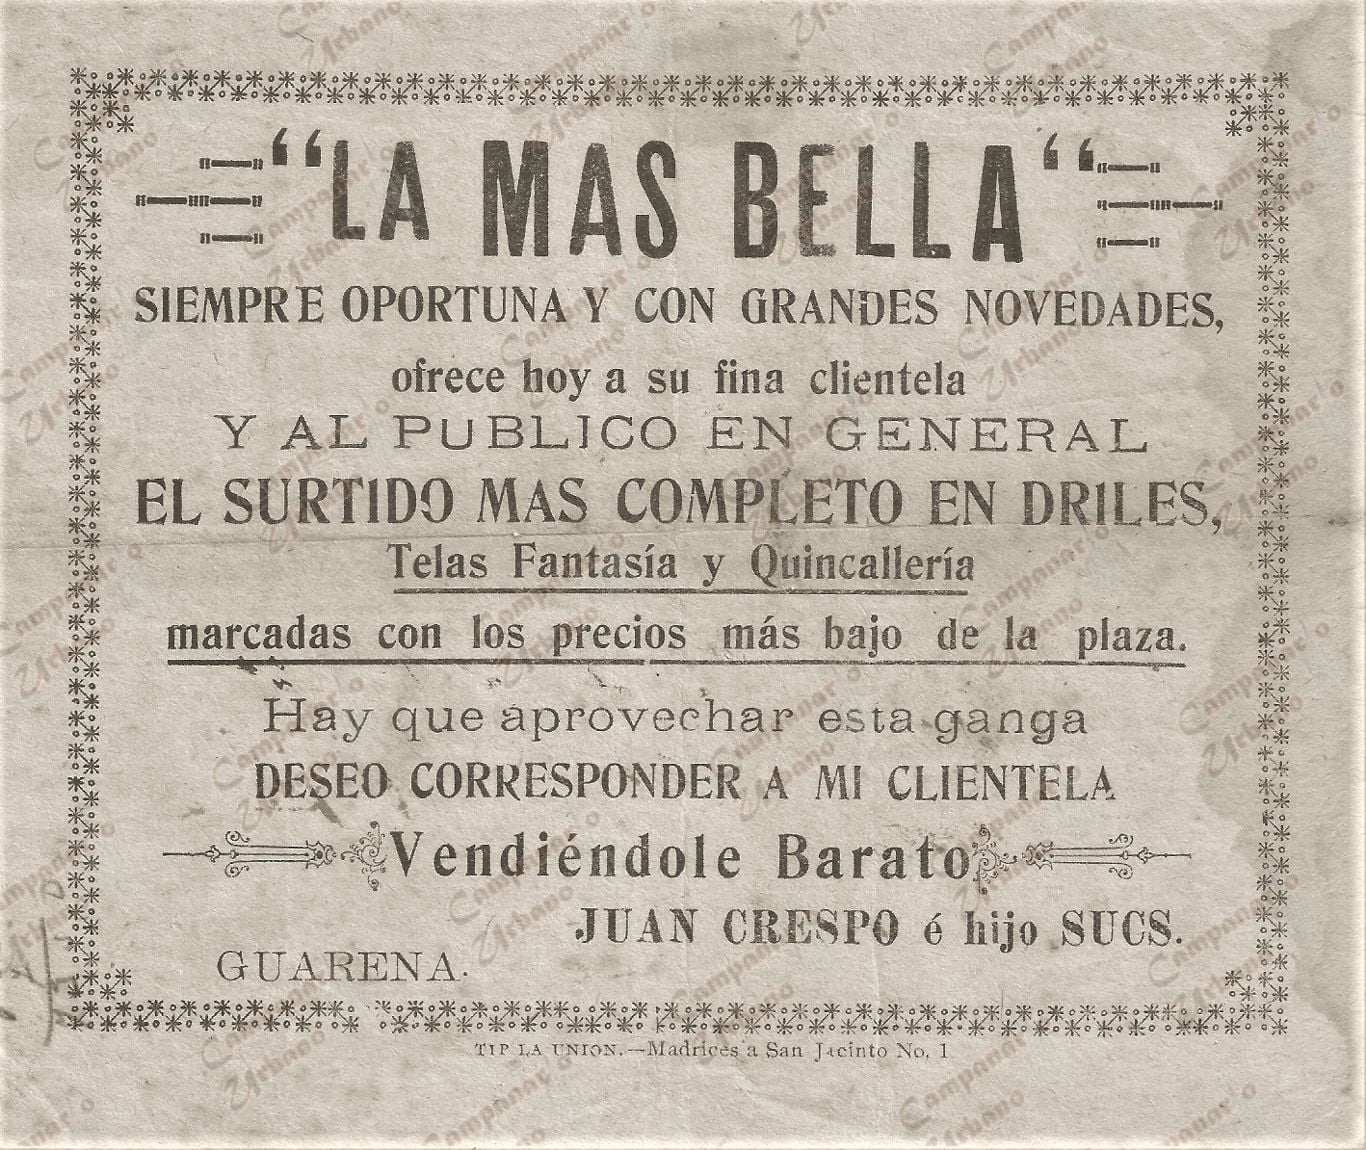 Pauta publicitaria en Guarenas, Tienda La Más Bella, del Señor Juan Crespo, año 1936.